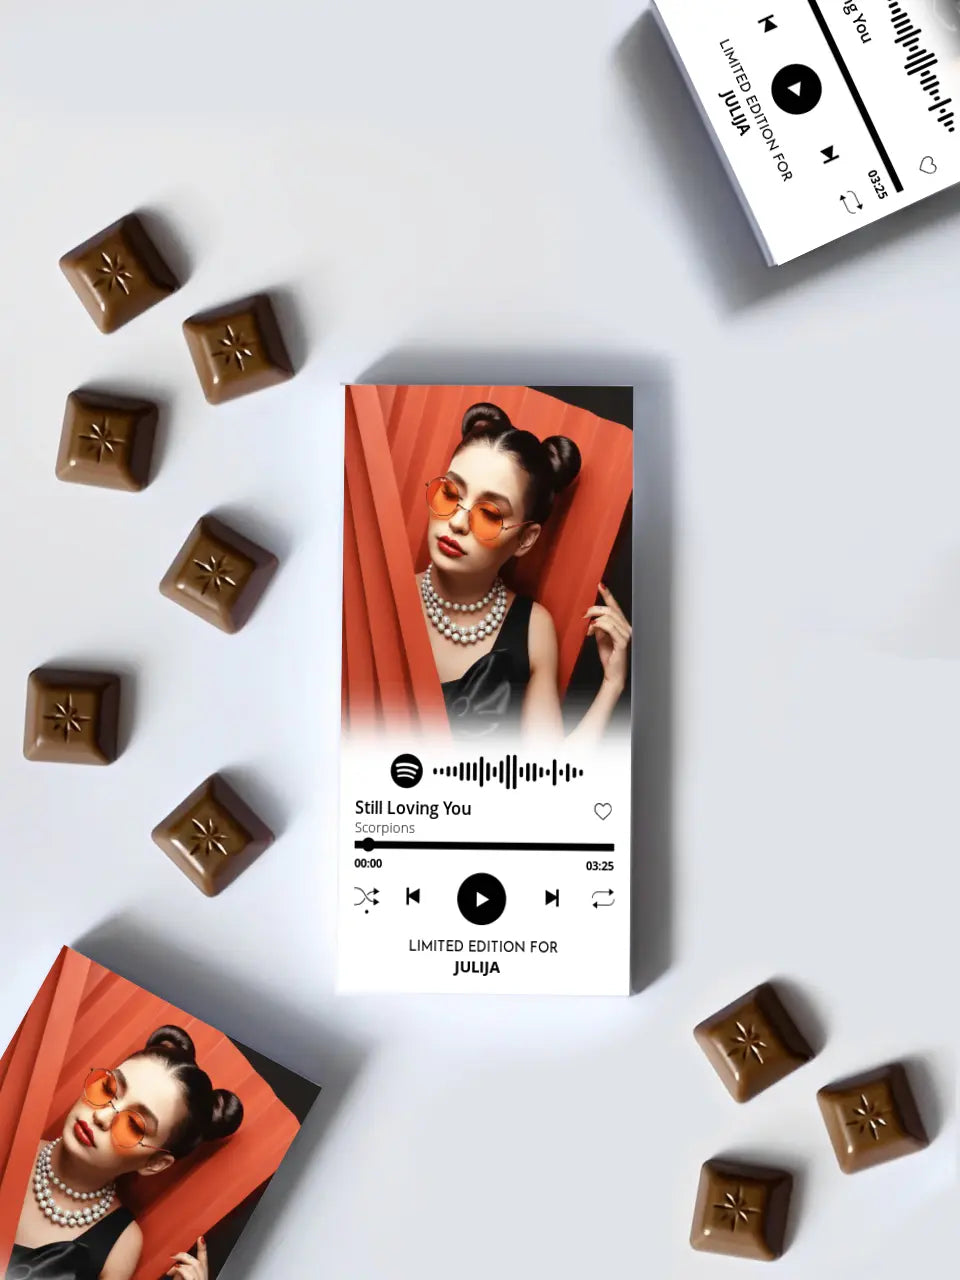 Personalizuotas "Spotify" šokoladas su jūsų nuotrauka